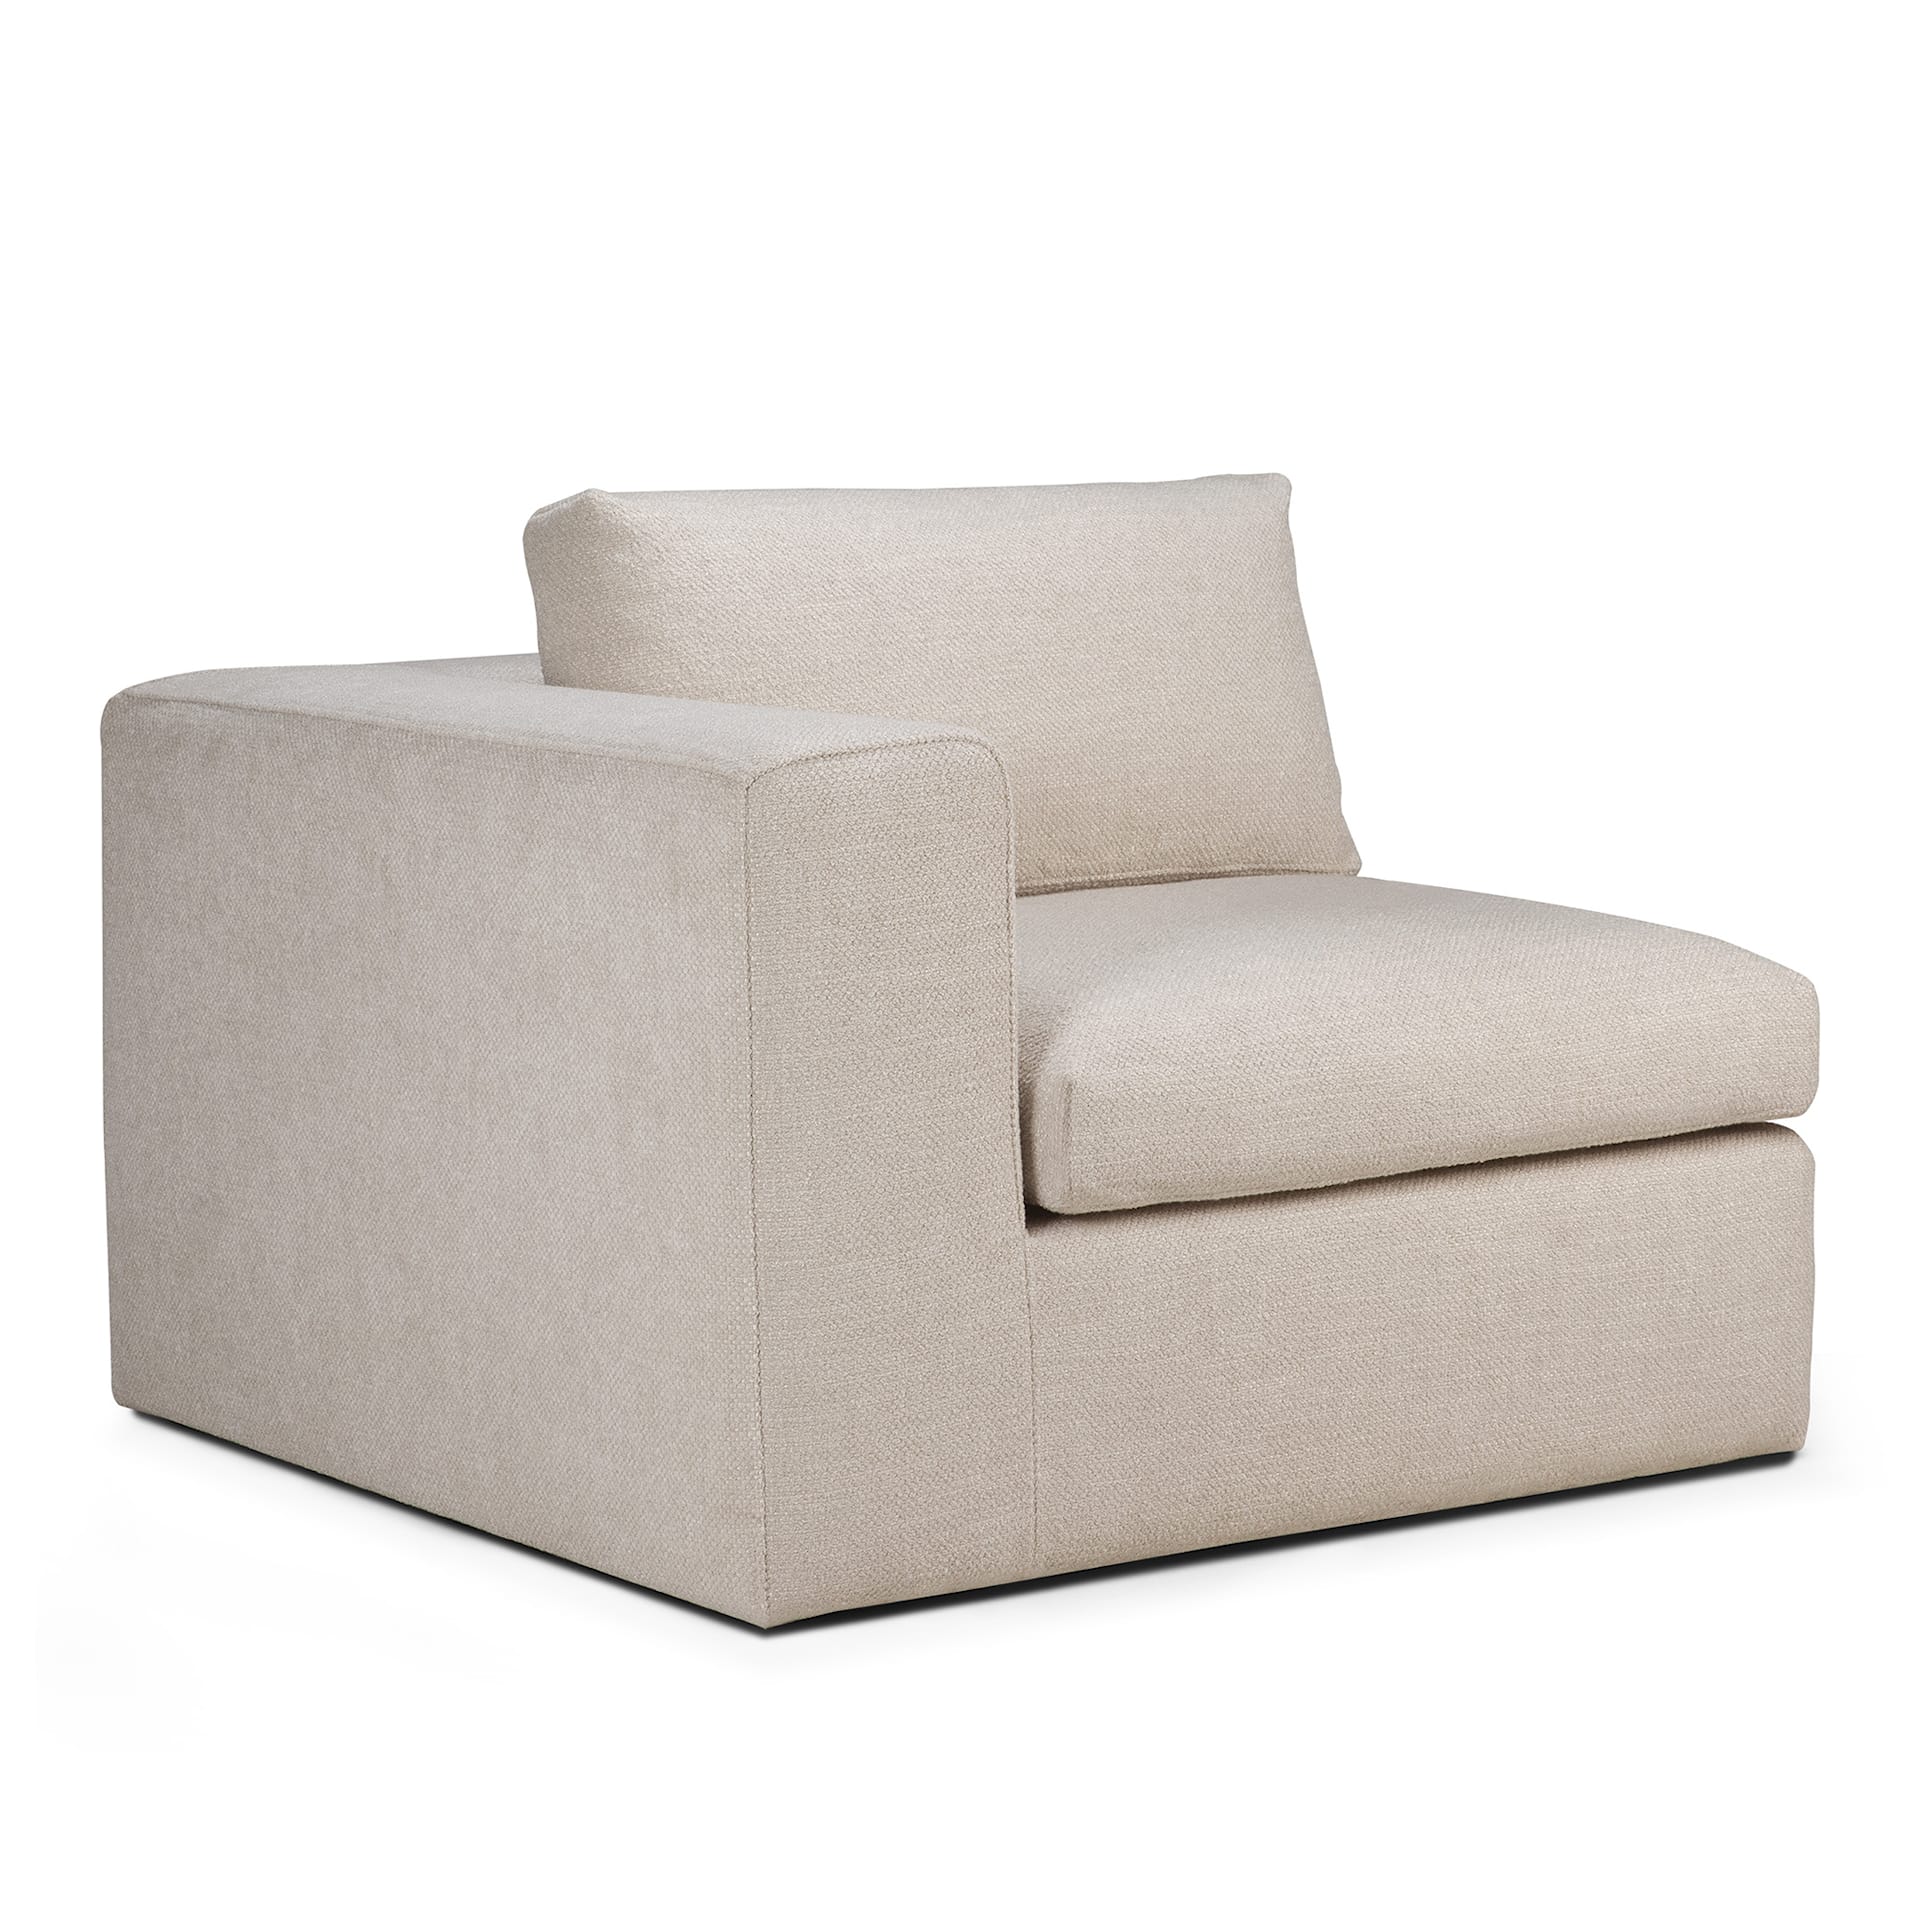 Mellow Modular Sofa End Seater - Ethnicraft - NO GA